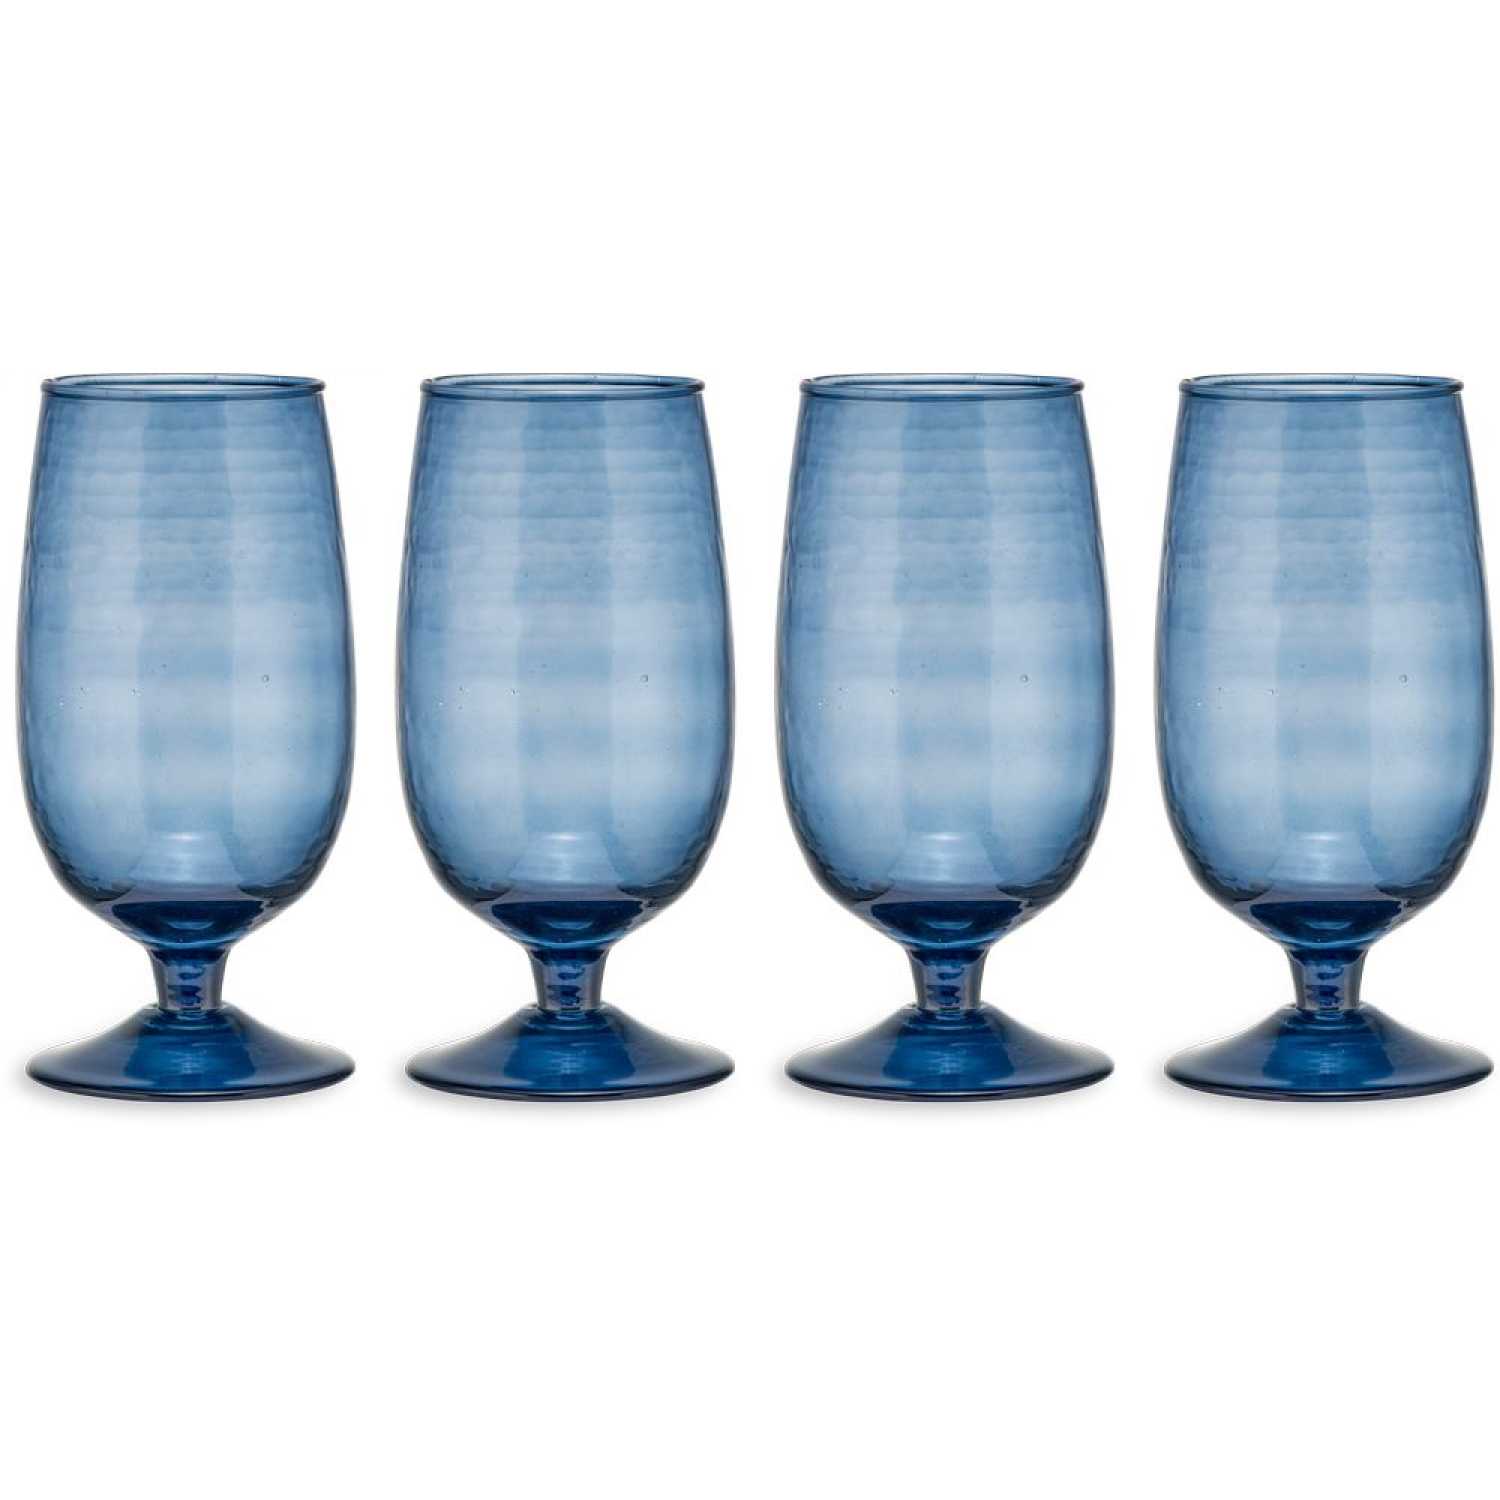 Nkuku Yala Tall Glasses - Set of 4 - Blue